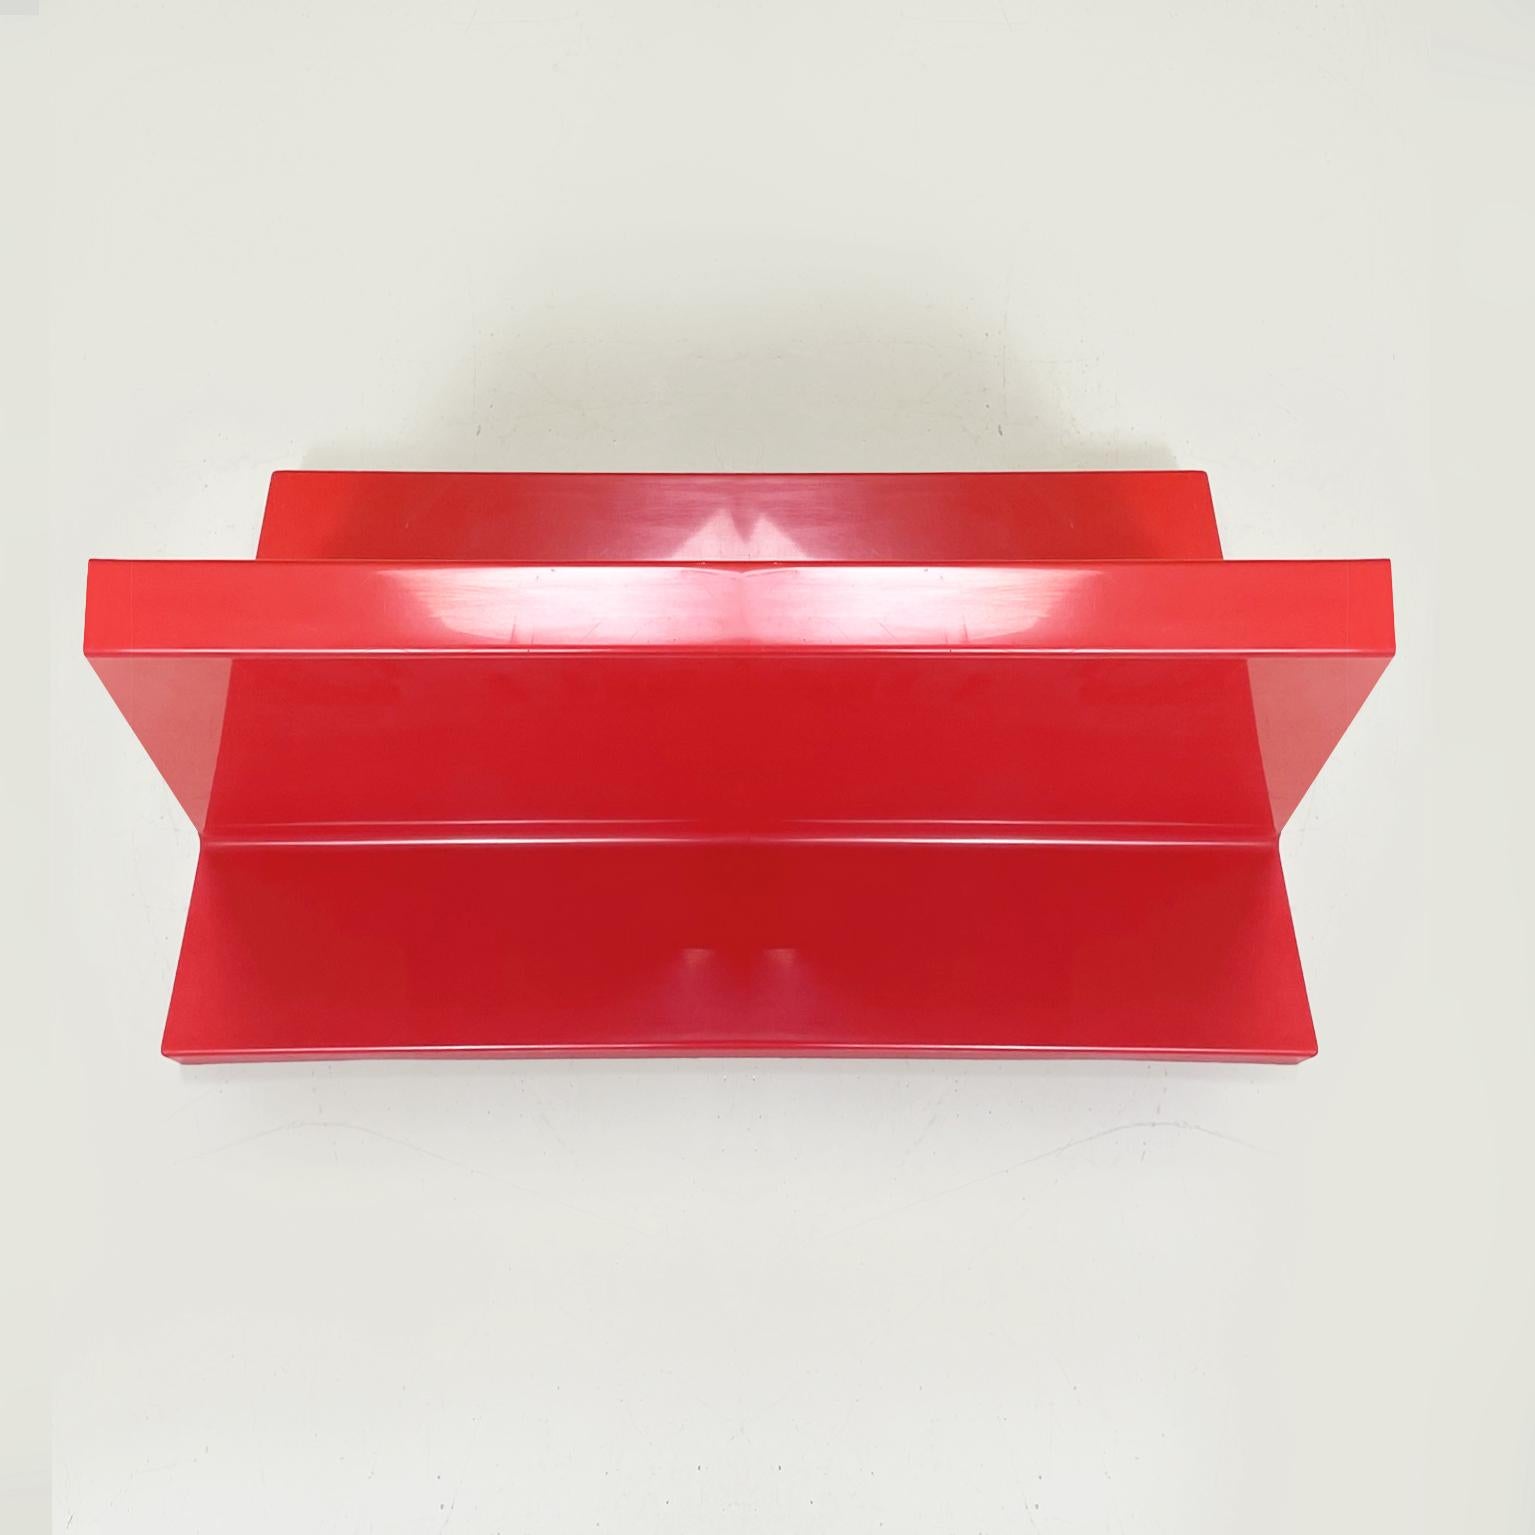 Plastic Italian modern Red plastic shelves by Marcello Siard for Kartell, 1970s For Sale